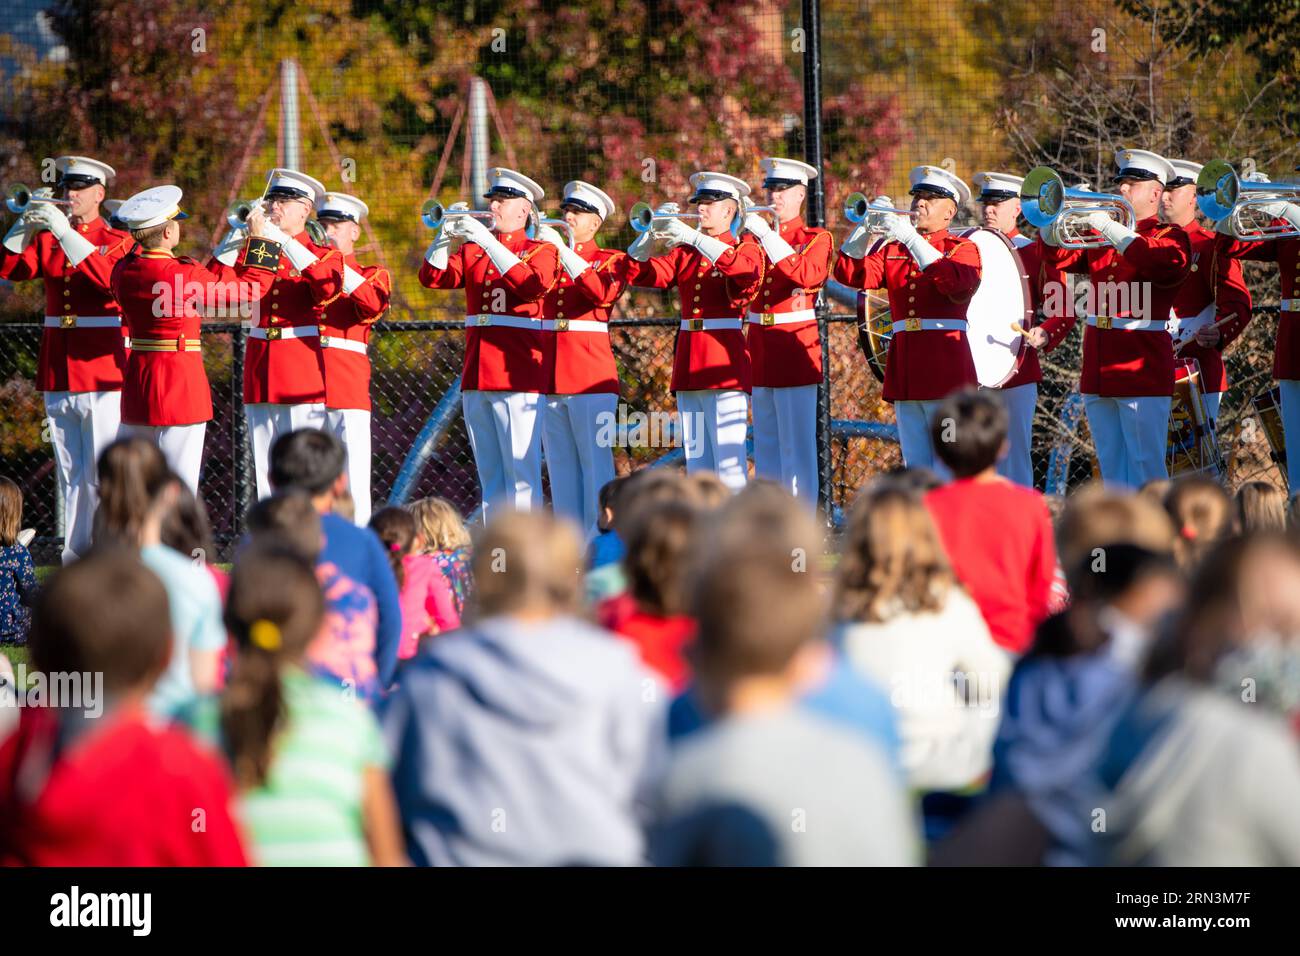 ARLINGTON VA, Vereinigte Staaten – Mitglieder des US Marine Corps Commandant's eigenen Trommeln- und Trommelkorps treten für begeisterte Schüler an einer Grundschule in Arlington auf. Bekannt für ihre Präzision und musikalische Exzellenz, führt der Commandant's Own oft Community Outreach durch, indem er junge Köpfe durch Musik in die Traditionen und Disziplin des Marine Corps einführt. Stockfoto